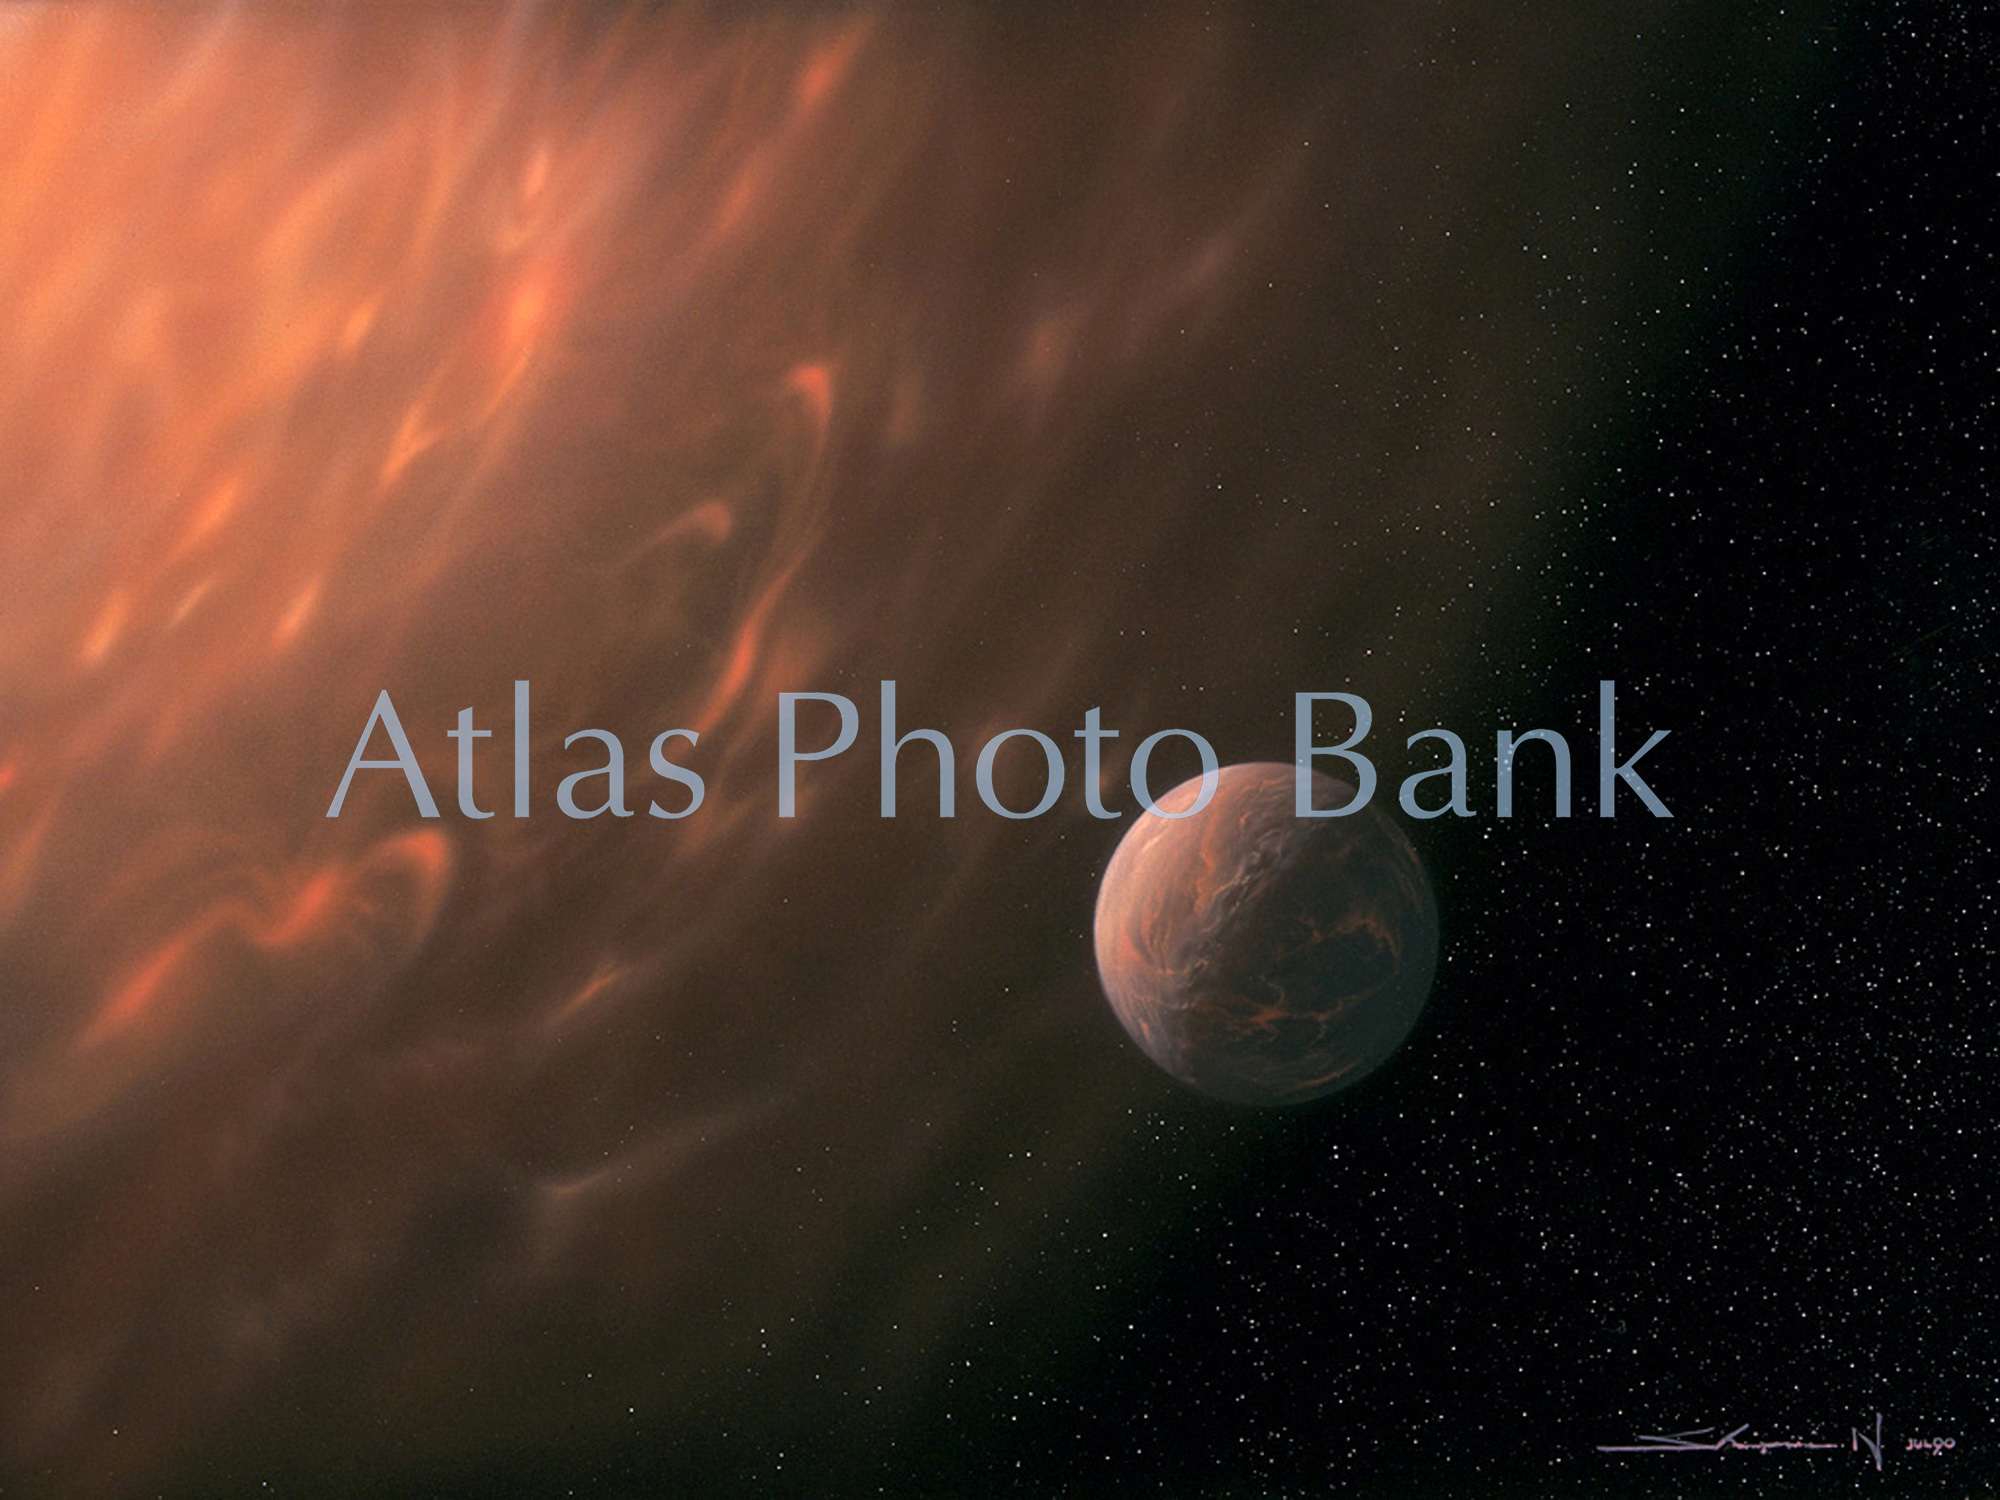 LS-043-赤色巨星になった太陽と地球